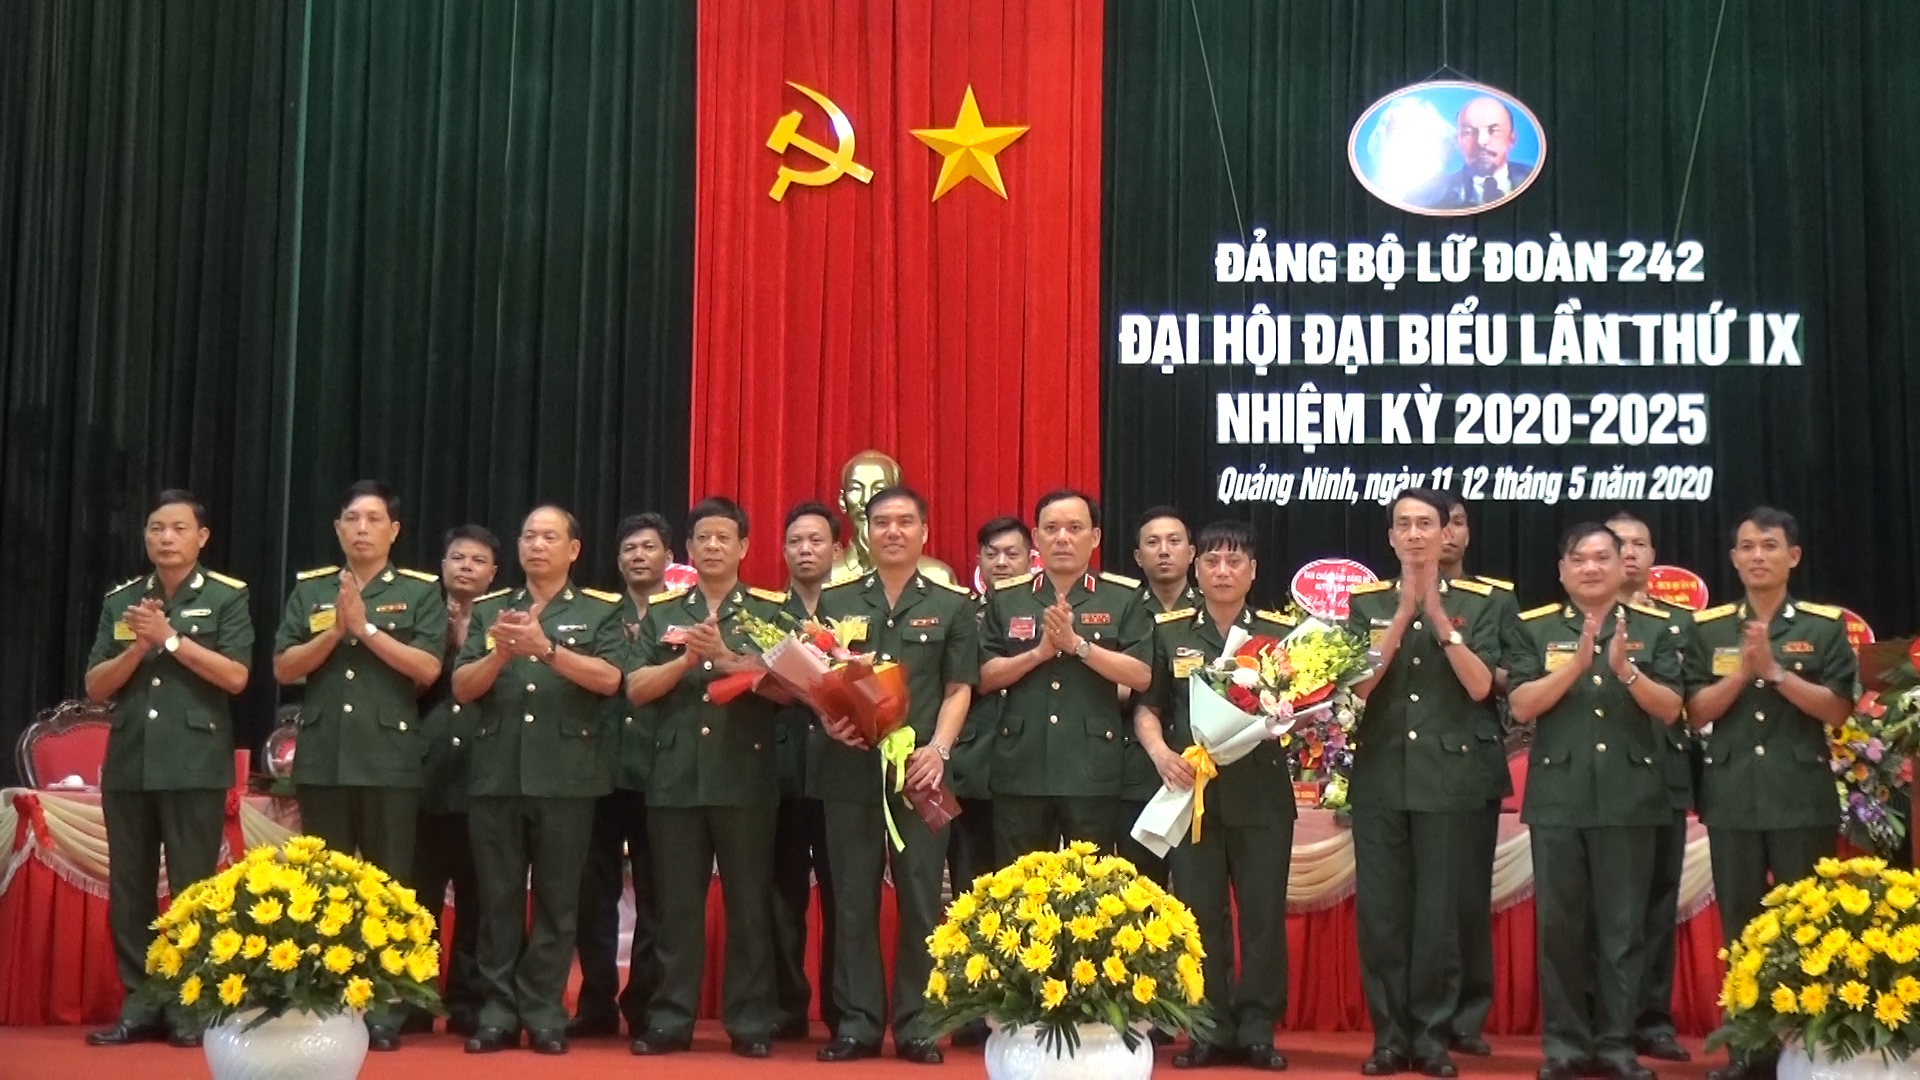 Thiếu tướng Đỗ Phương Thuấn, Đảng ủy viên, Phó Tư lệnh Quân khu chúc mừng BCH khóa mới và ĐB đi dự Đại hội cấp trên